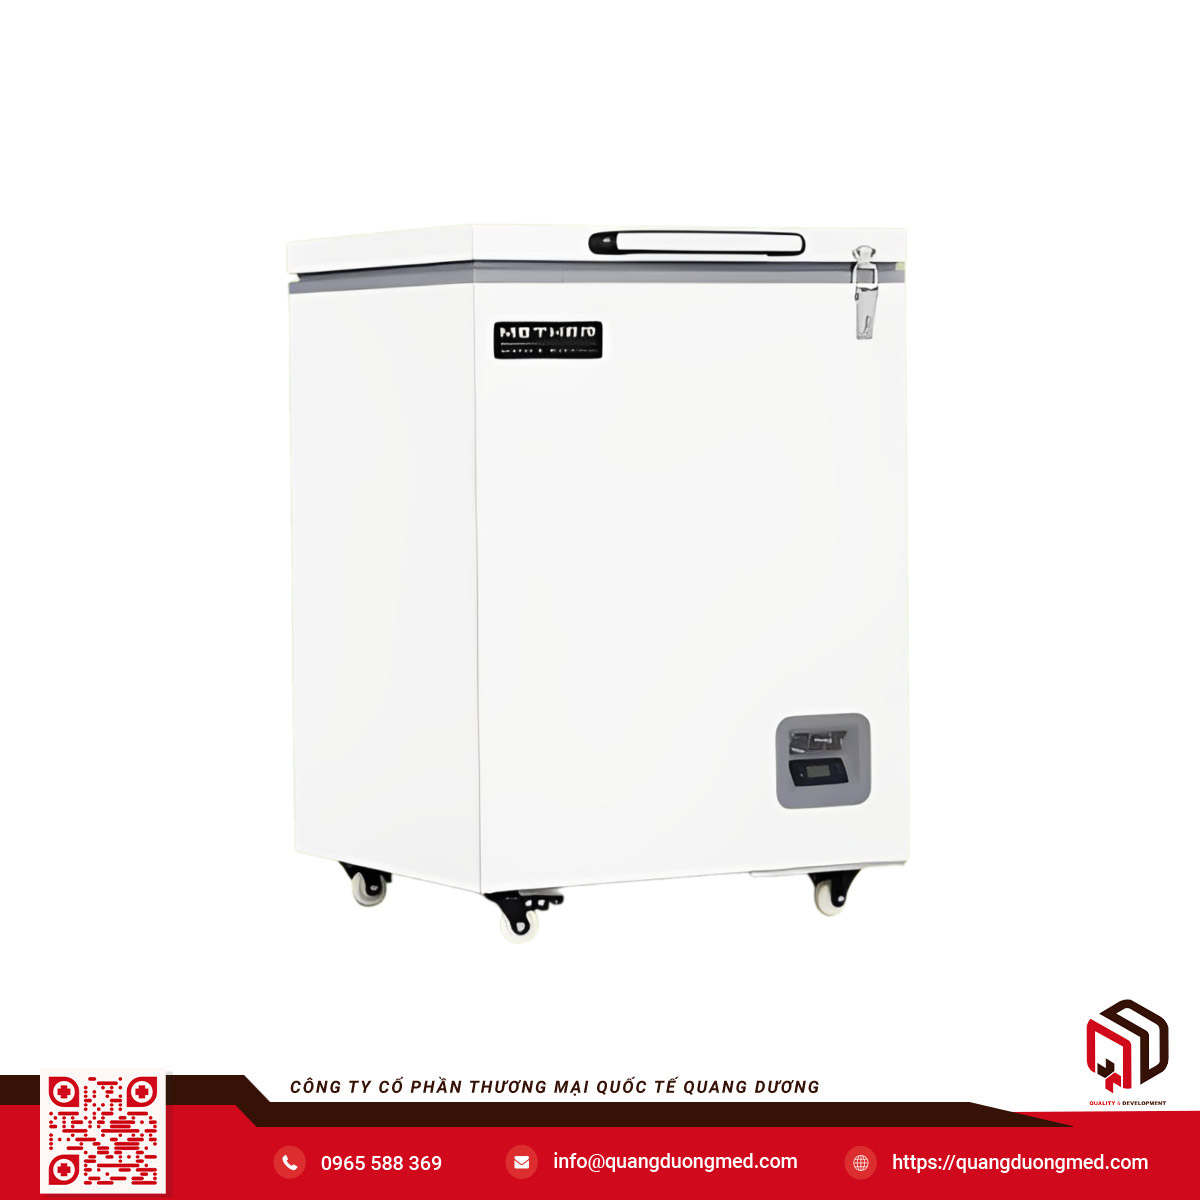 Tủ lạnh âm sâu, Tủ trữ -40 độ C - Model: MDF-40H105